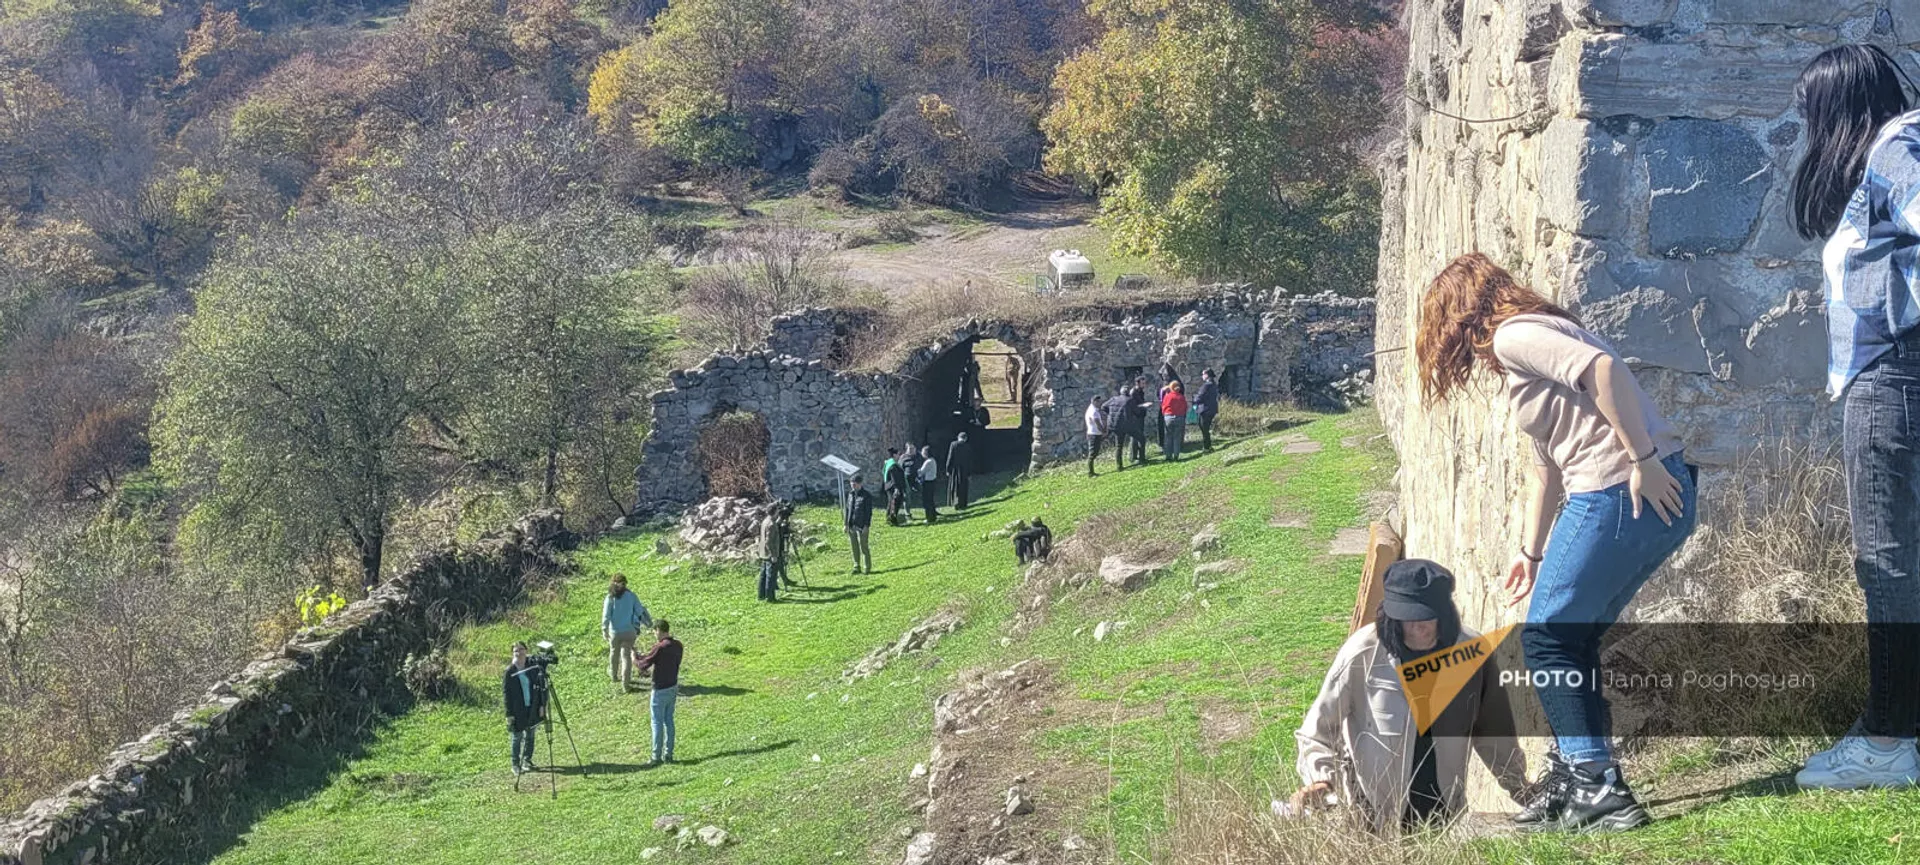 Прихожане и туристы у монастыря Акопаванк в Мартакертской области Карабаха - Sputnik Արմենիա, 1920, 29.10.2021